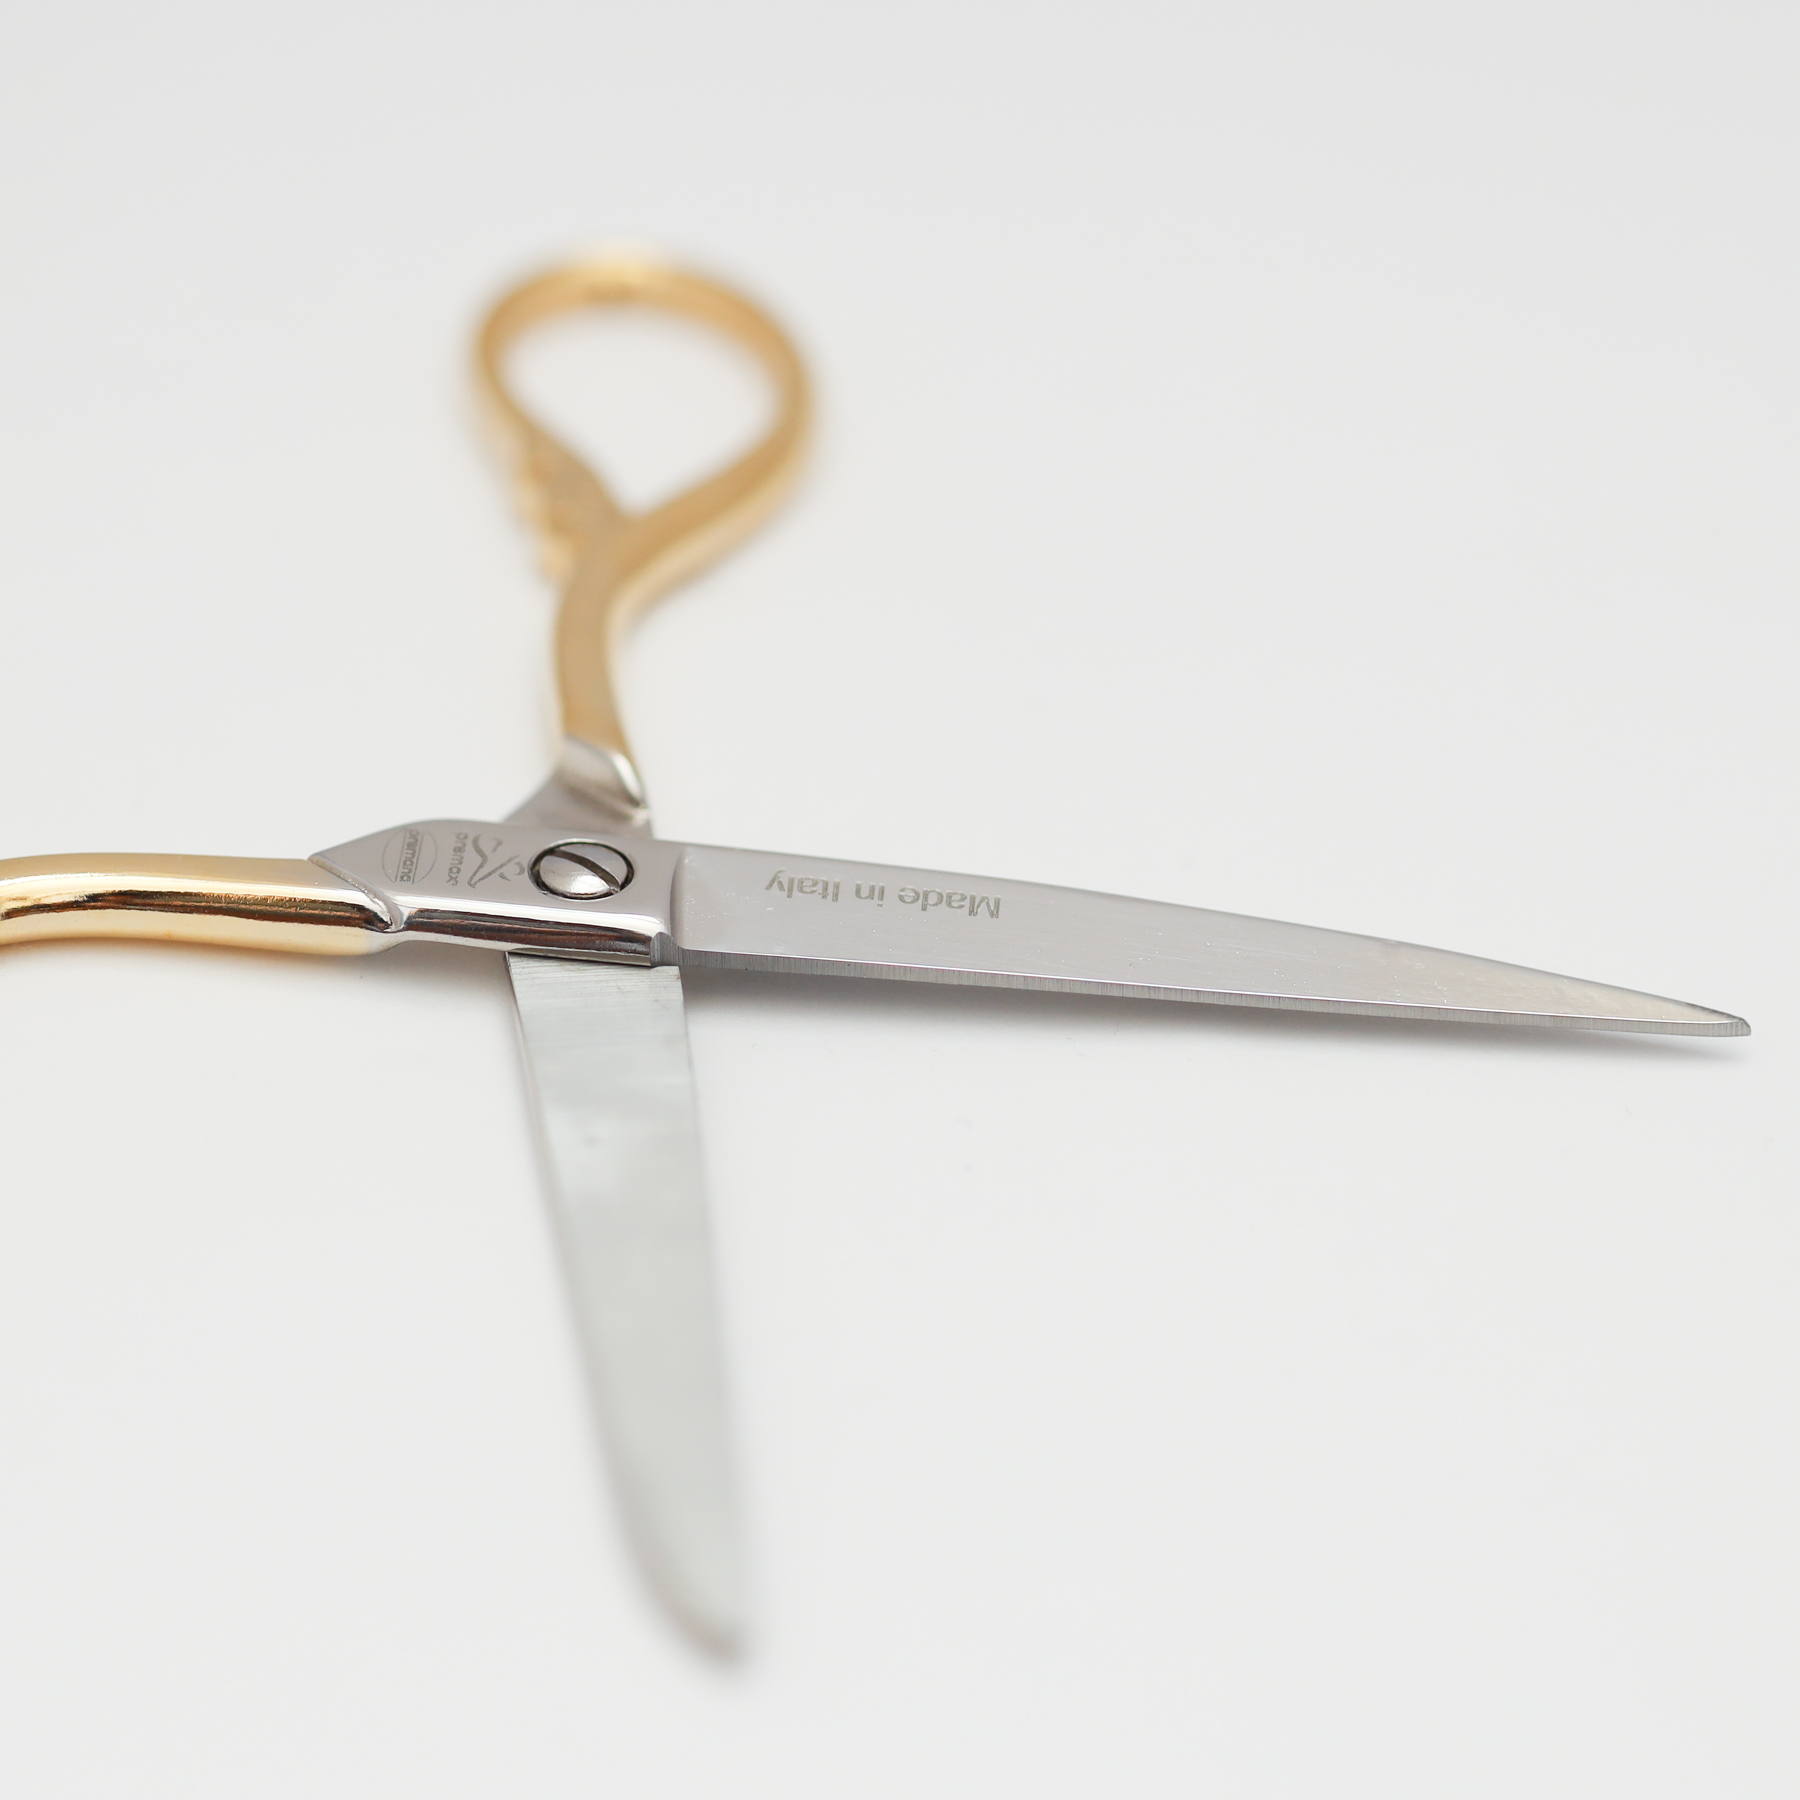 Sewing Scissors - Leaf